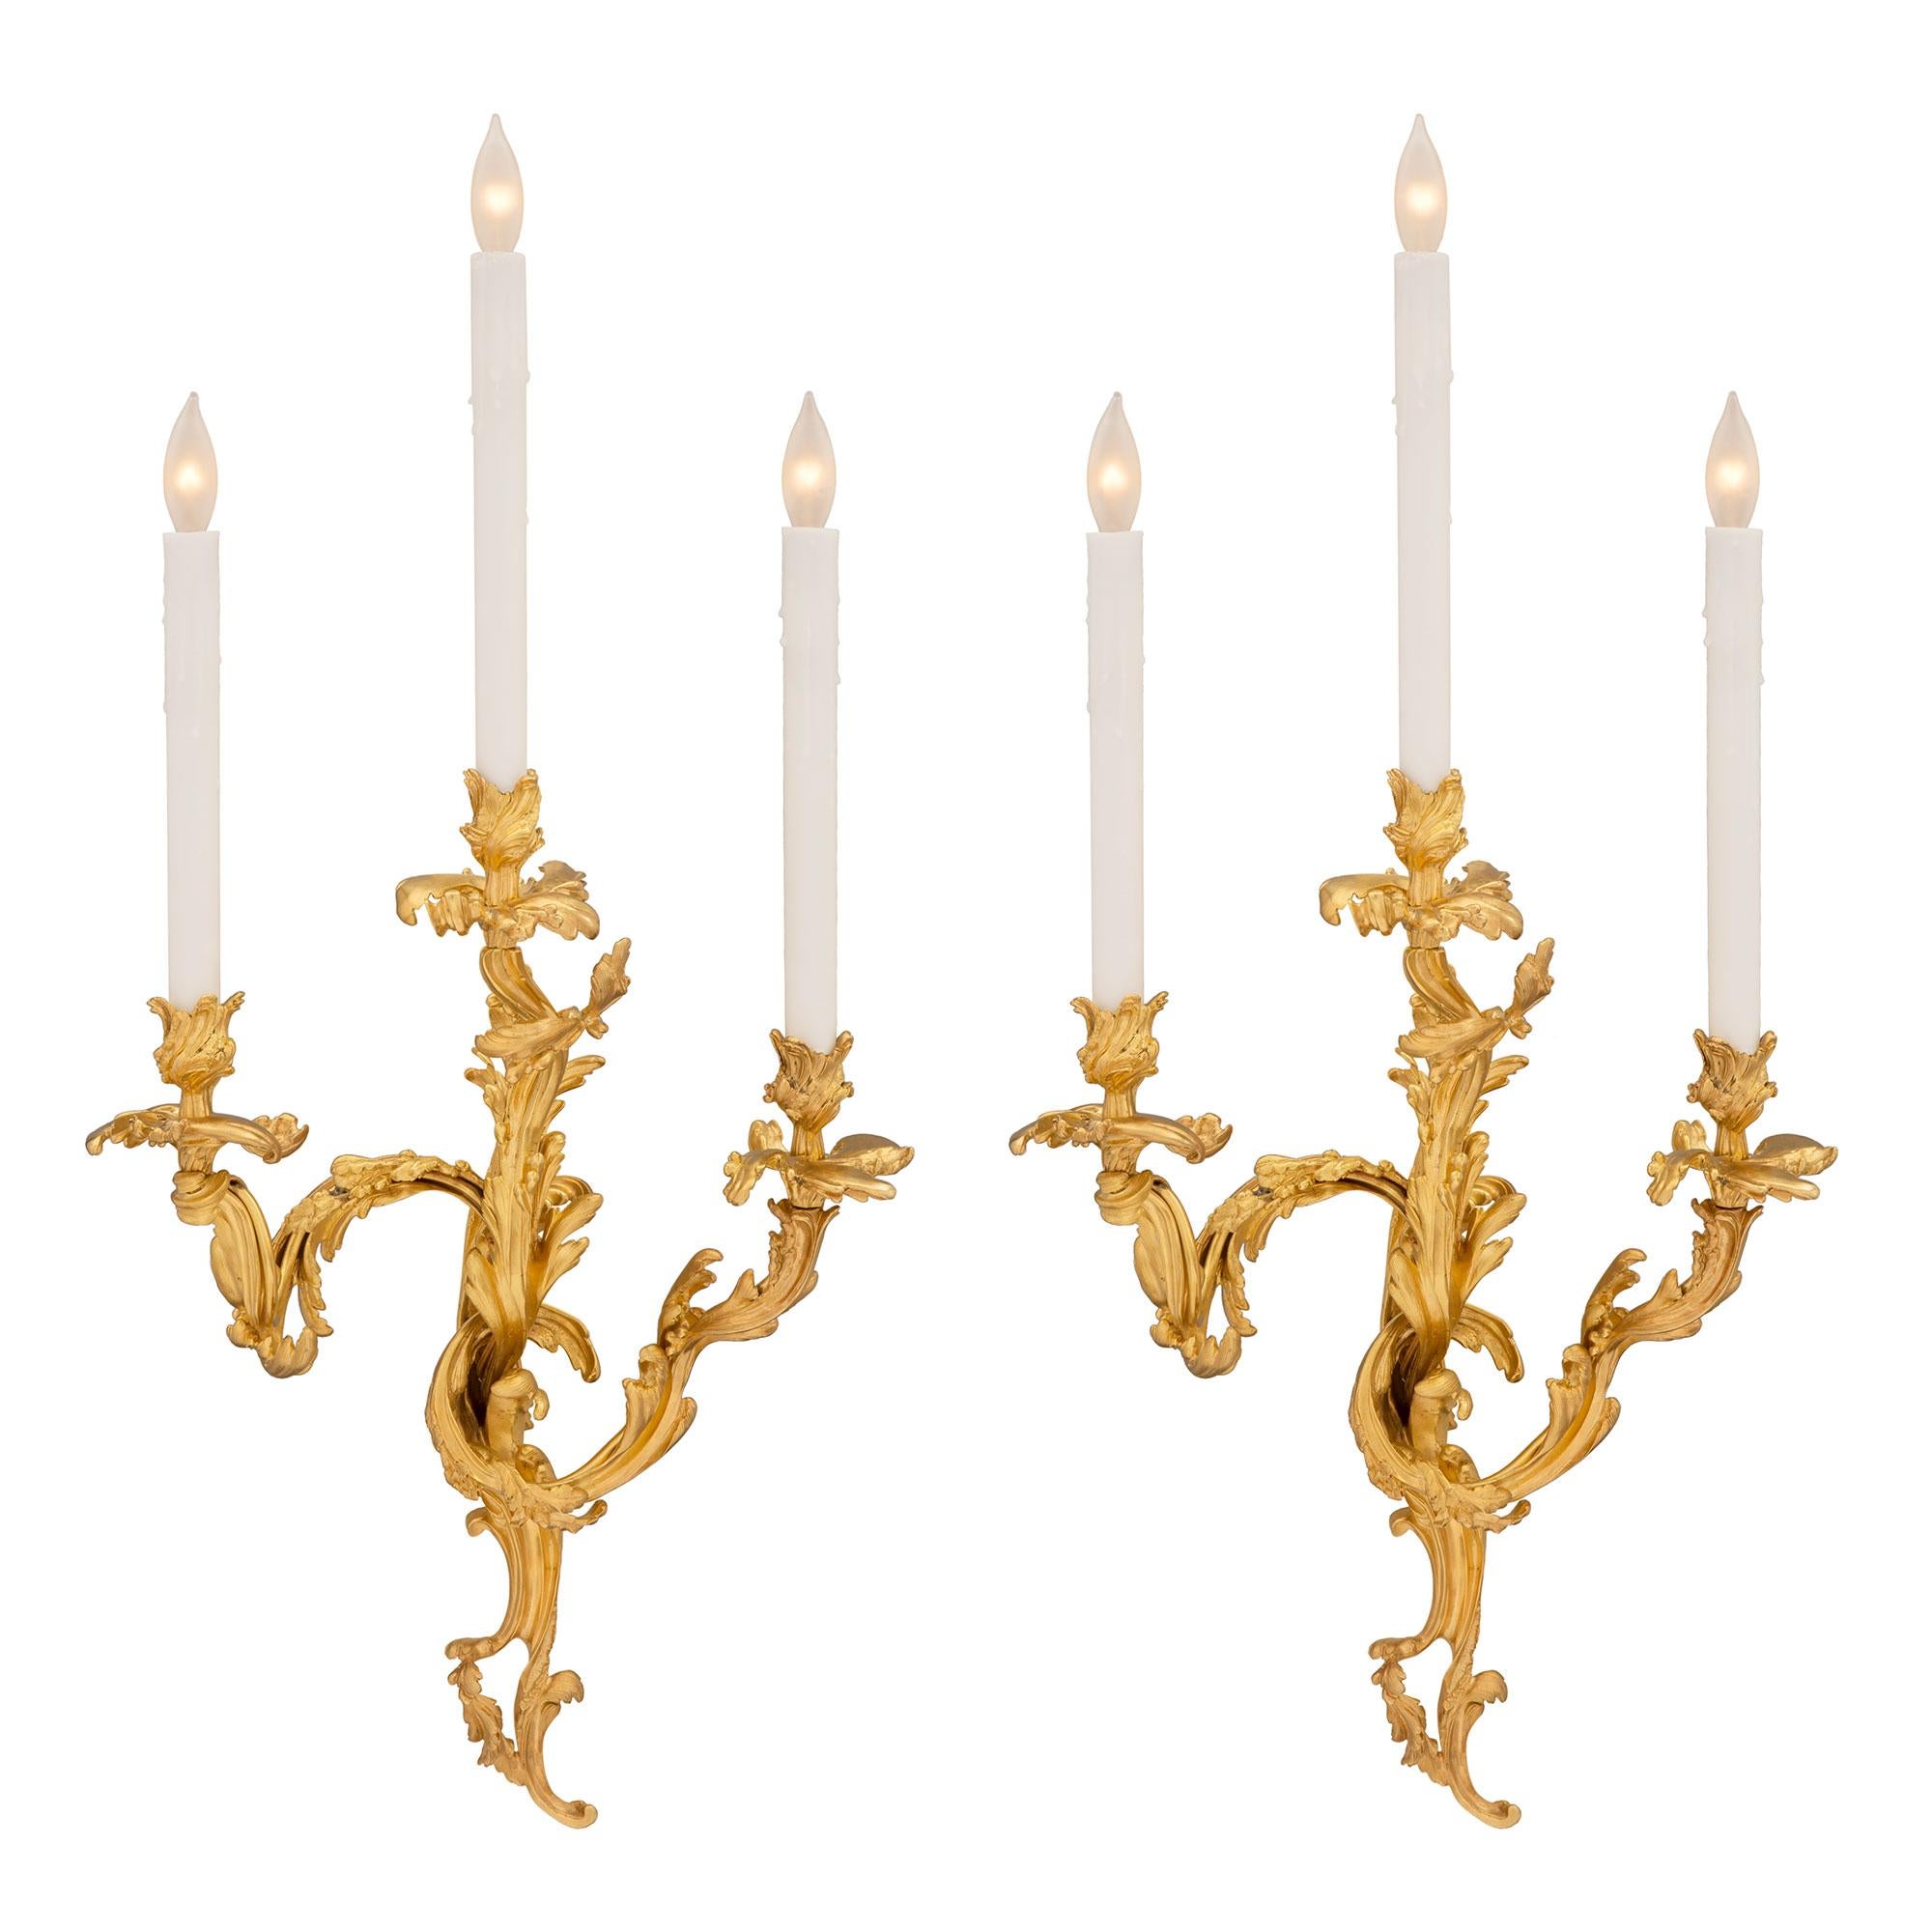 Une paire étonnante d'appliques françaises du milieu du 19ème siècle, de style Louis XV et en bronze doré. Chaque applique à trois bras de lumière est centrée par une plaque arrière finement percée et ornée de feuilles richement ciselées. Chacun des